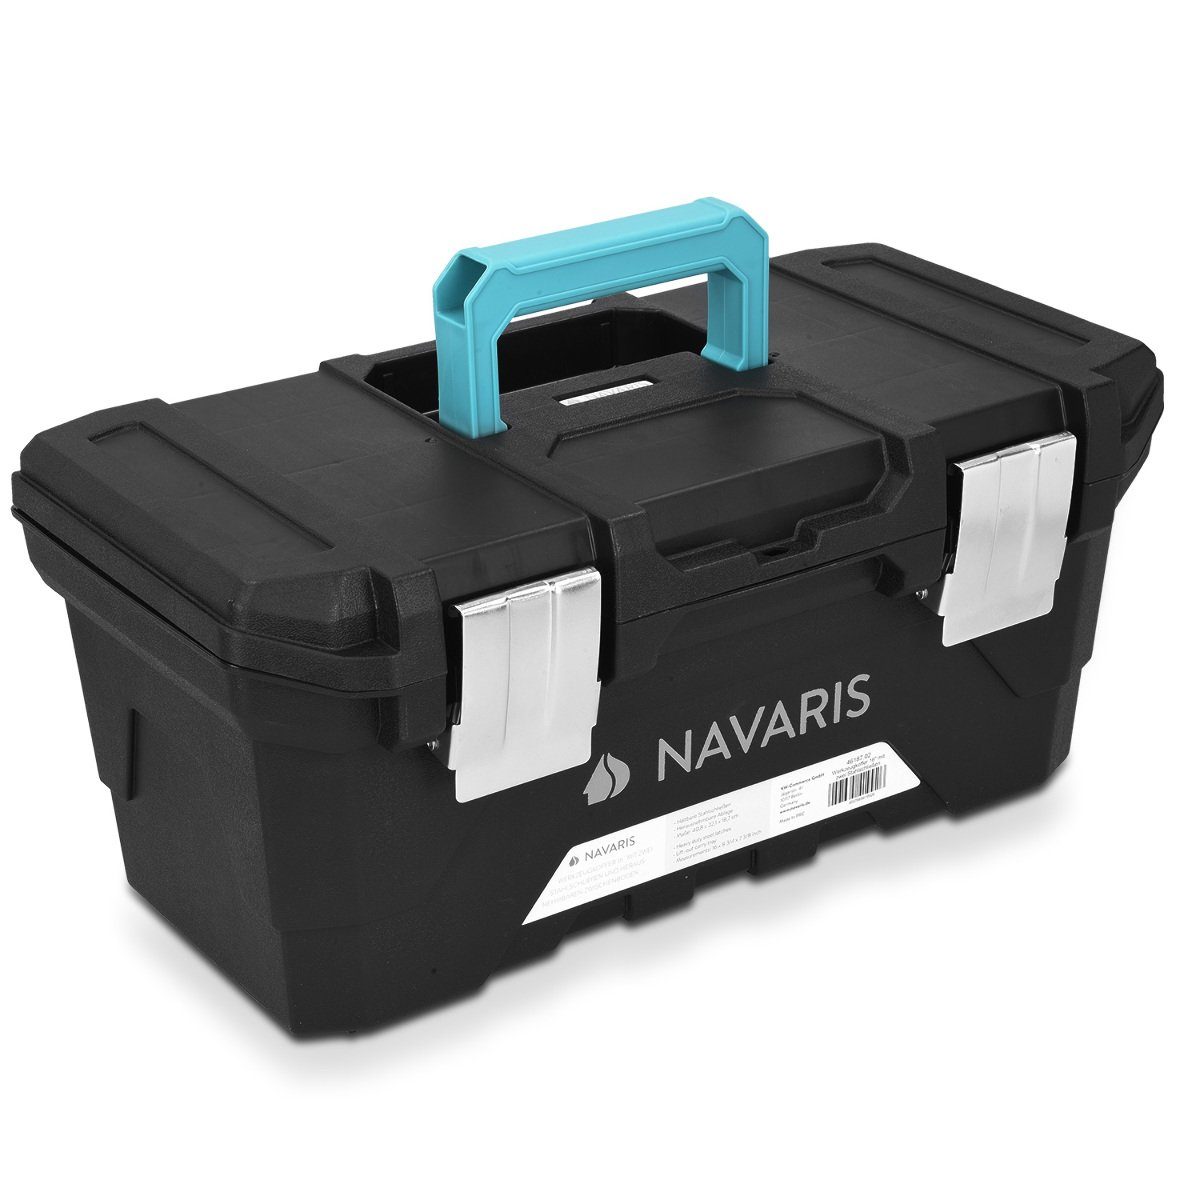 Navaris Werkzeugkoffer Werkzeugkasten 16 leer - 40,6 x 22,1 x 18,7cm - 15  Liter, 2 Schließen